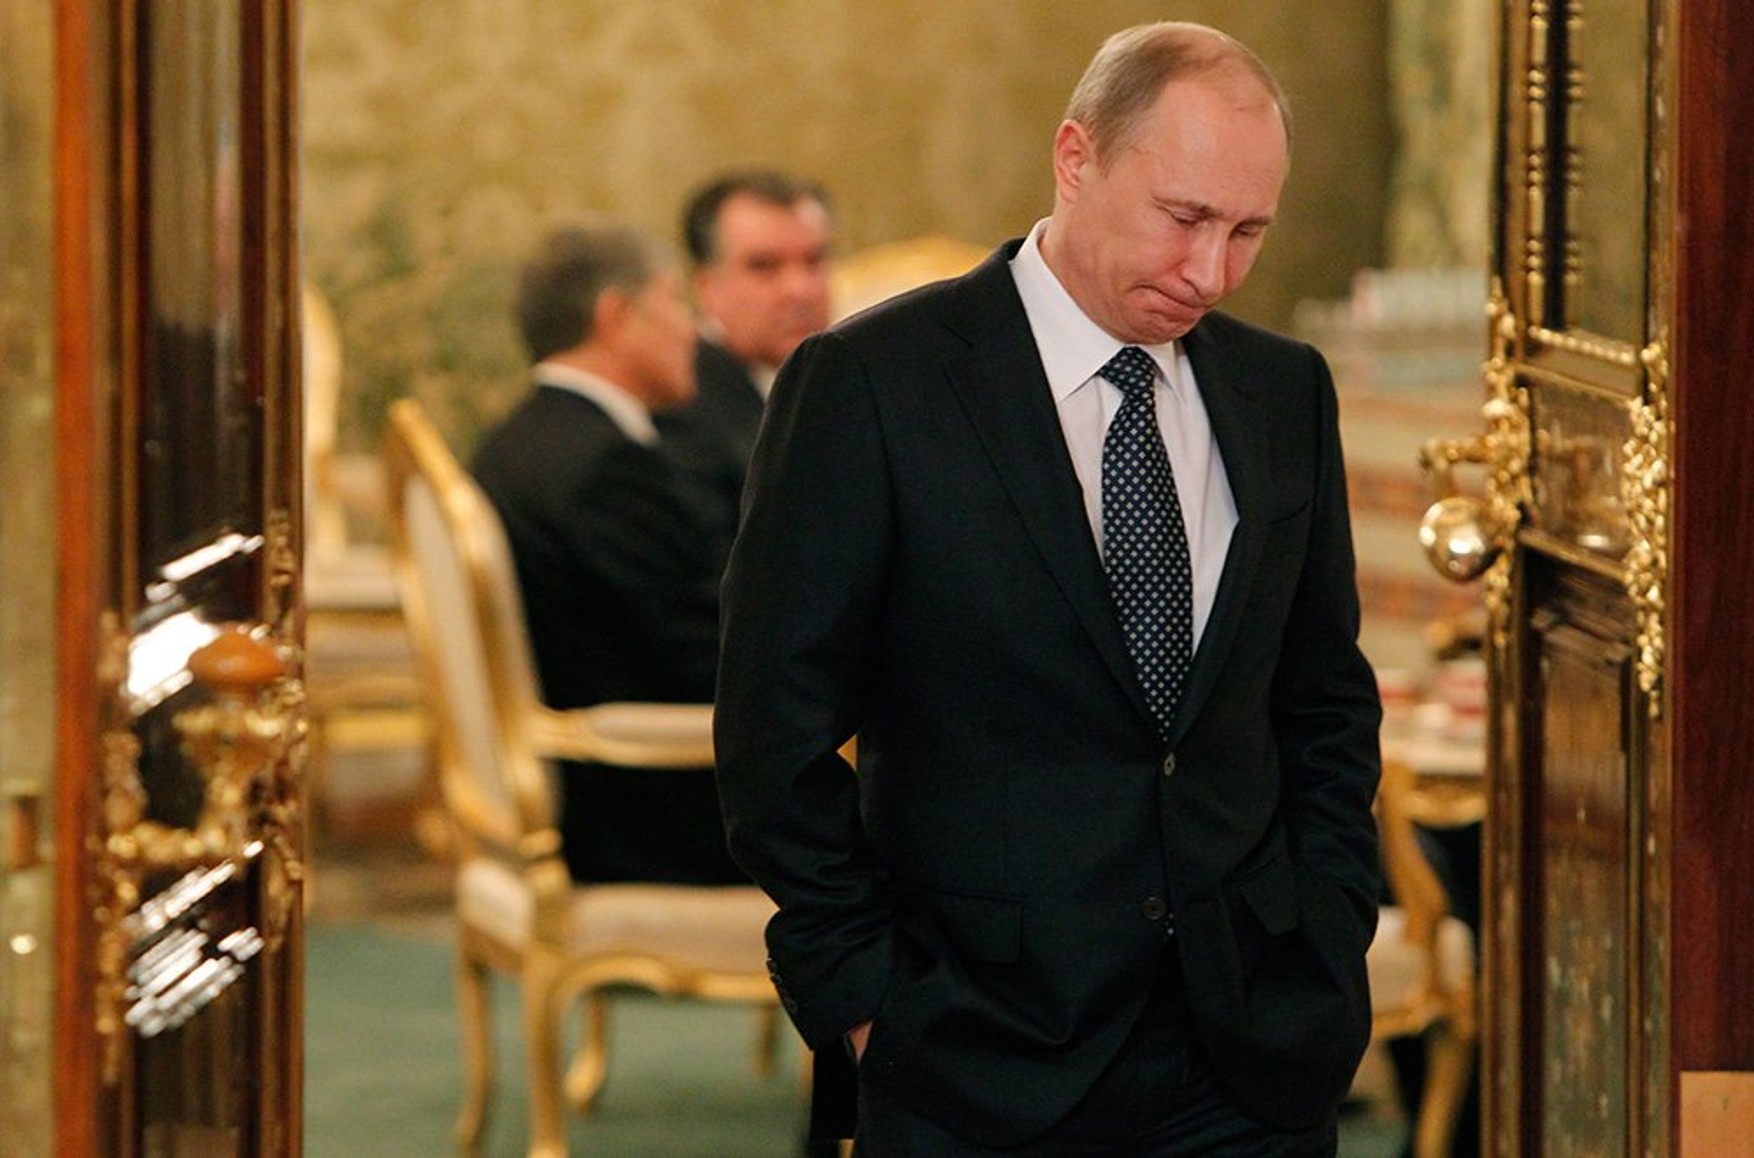 Путин не поедет на саммит G20, Россию будет представлять Лавров, заявил Песков